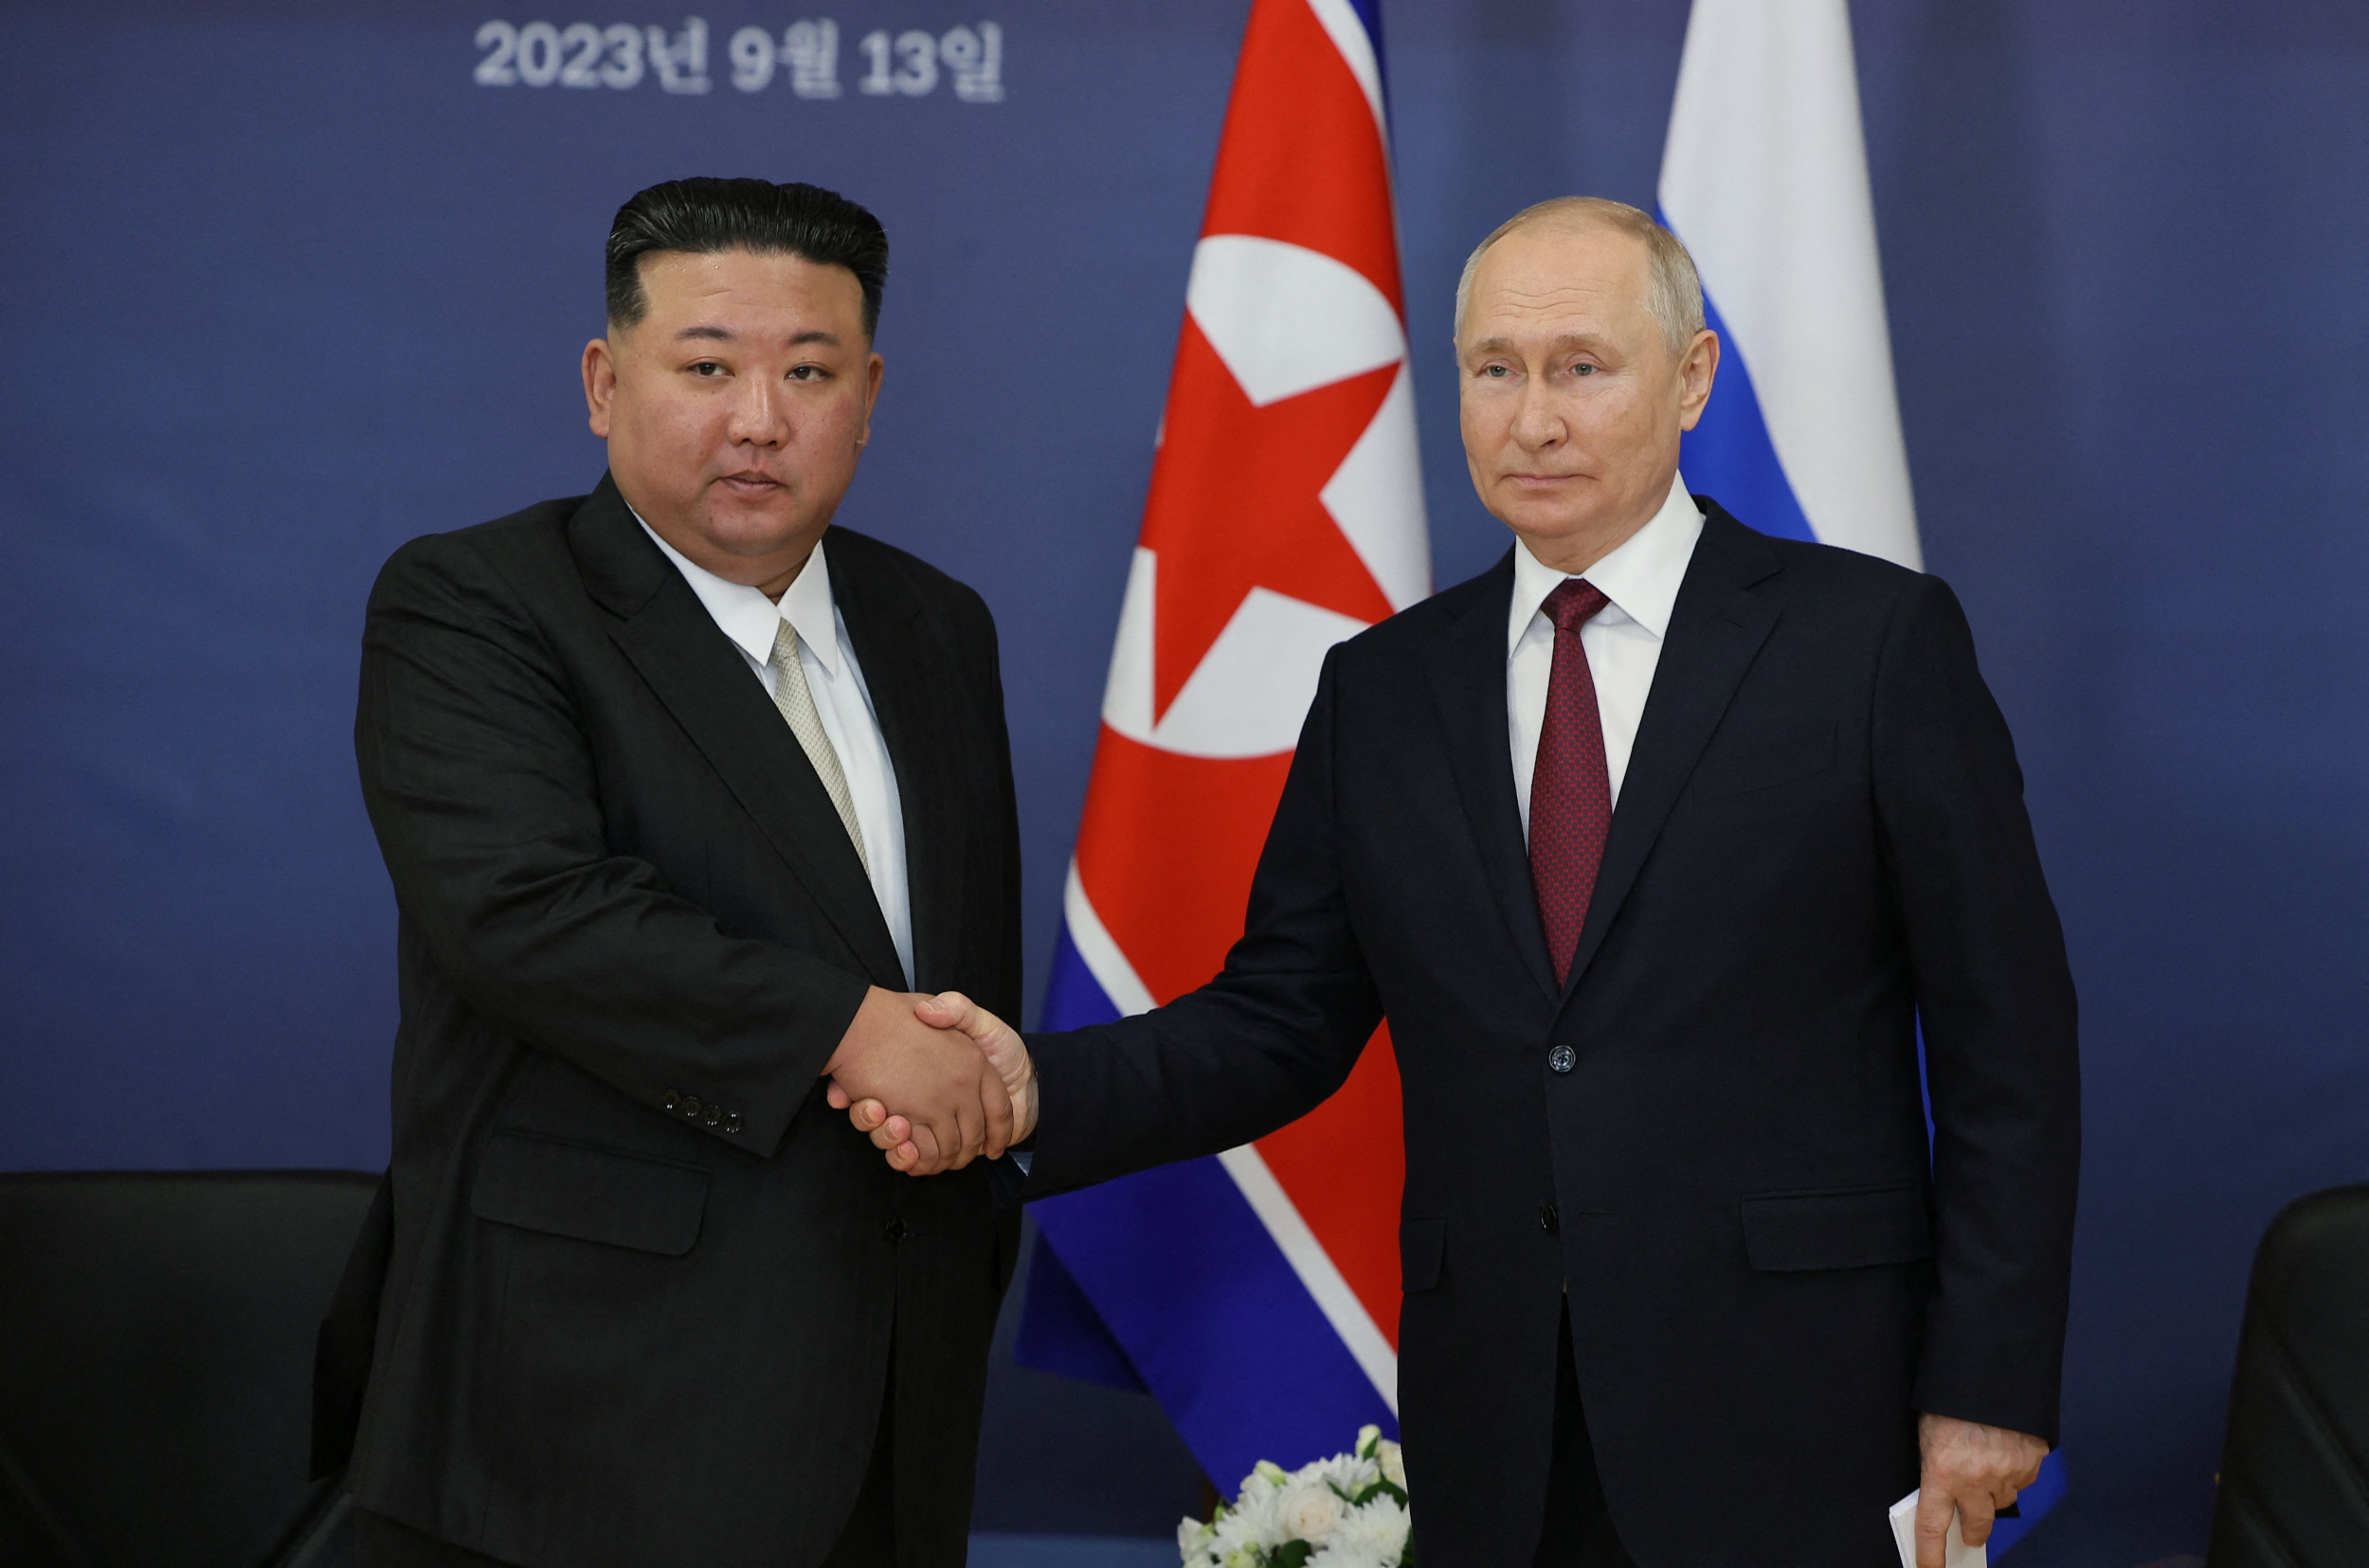 Des alliés comme la Corée du Nord et la Chine donnent à la Russie un avantage sur l’Ukraine, selon la Norvège